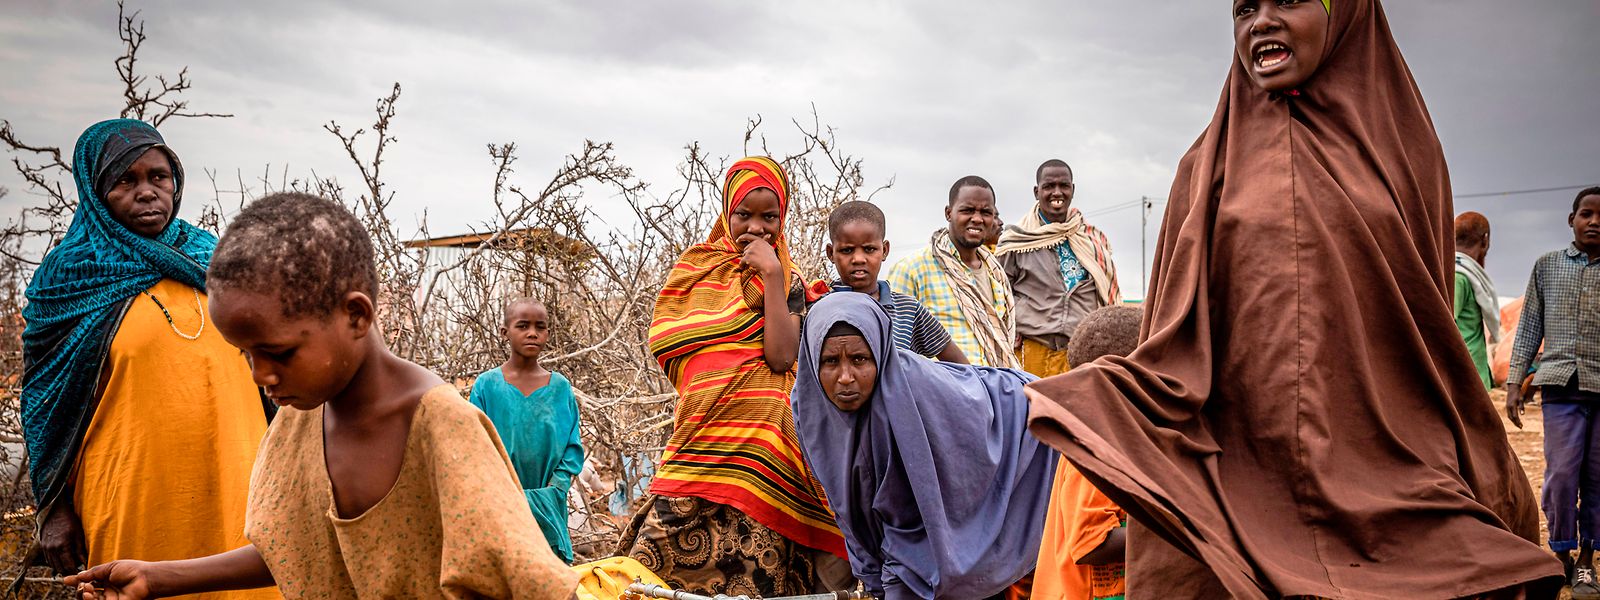 Mehr als eine halbe Million Kinder im ostafrikanischen Somalia stehen nach Angaben des UN-Kinderhilfswerks Unicef vor akuter, lebensbedrohlicher Unterernährung. 